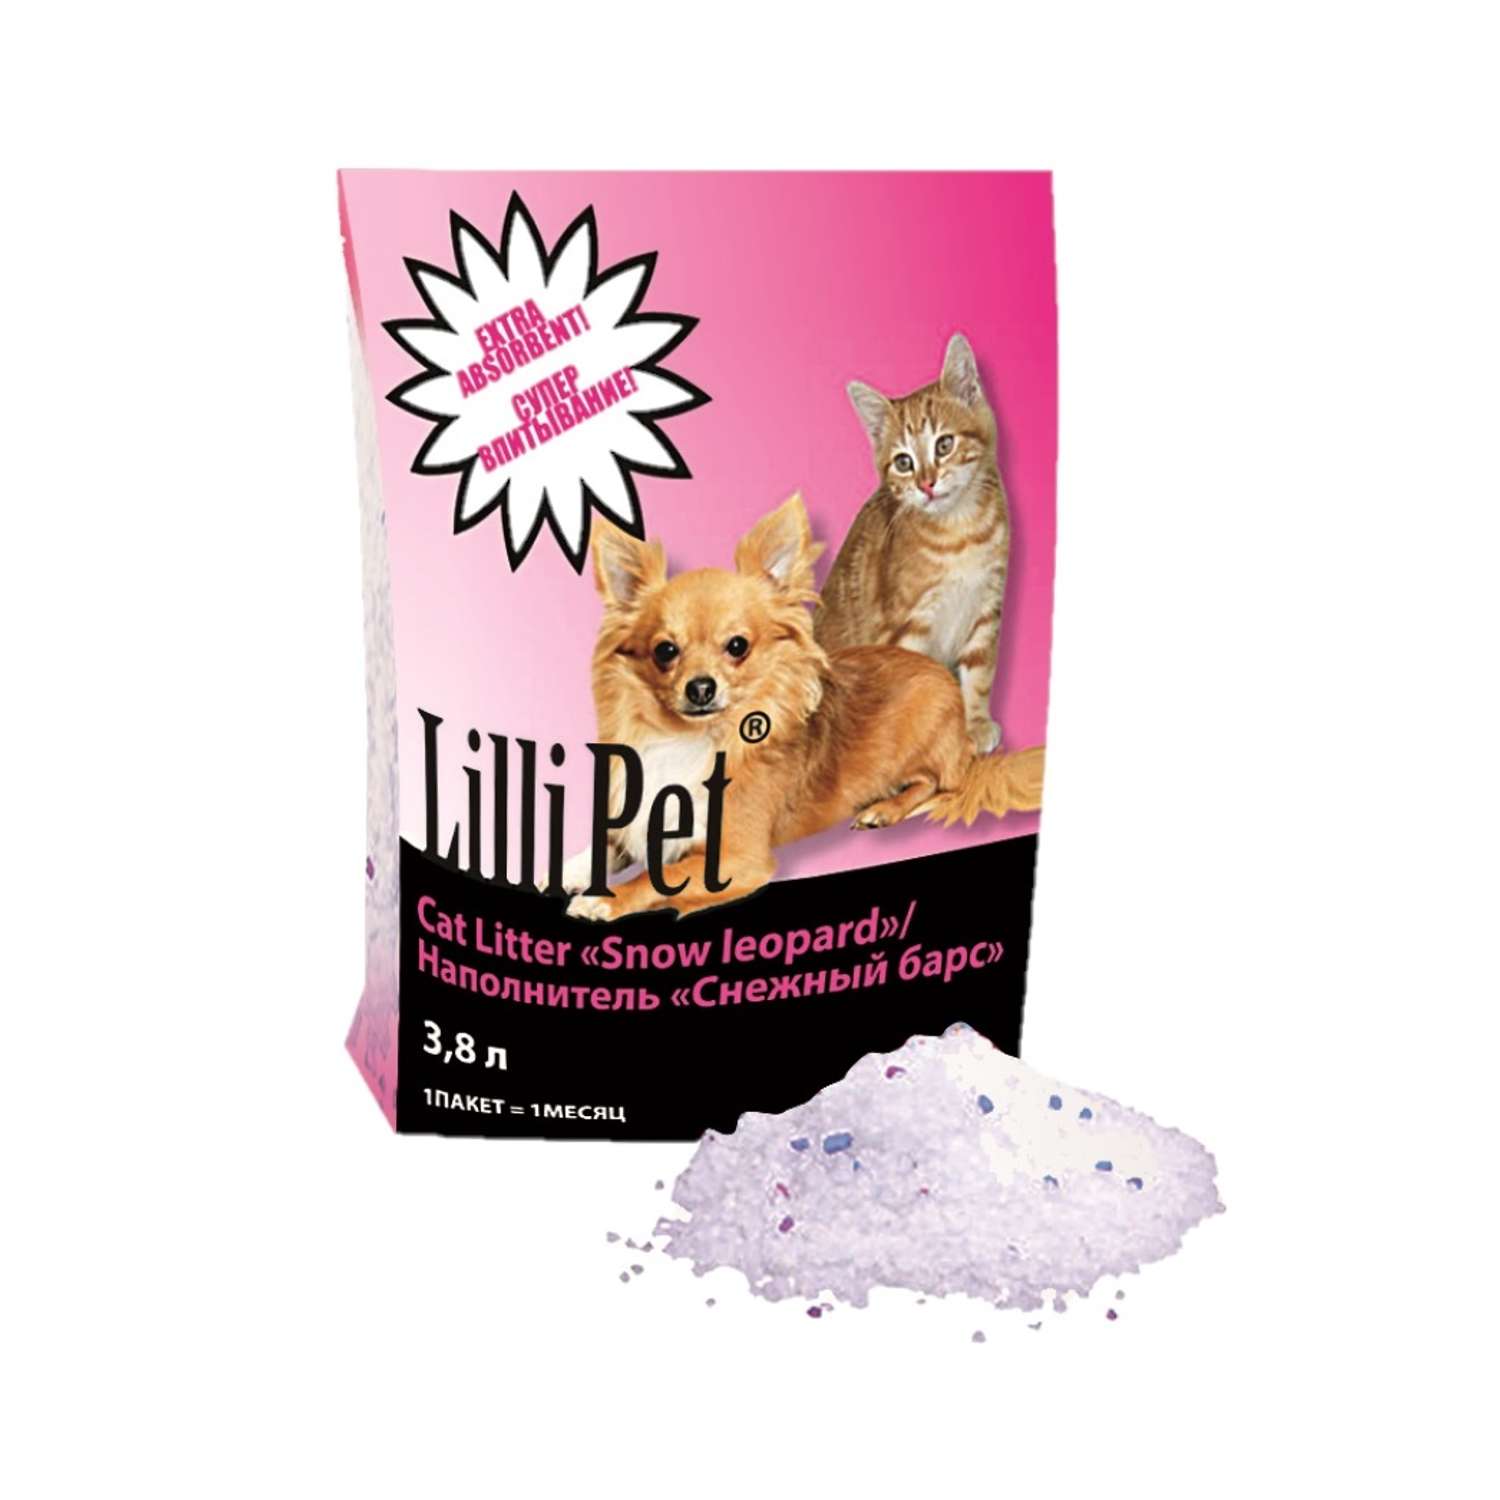 Наполнитель SNOW LEOPARD Lilli Pet силикагелевый для кошачьего туалета 3.8 литра - фото 1